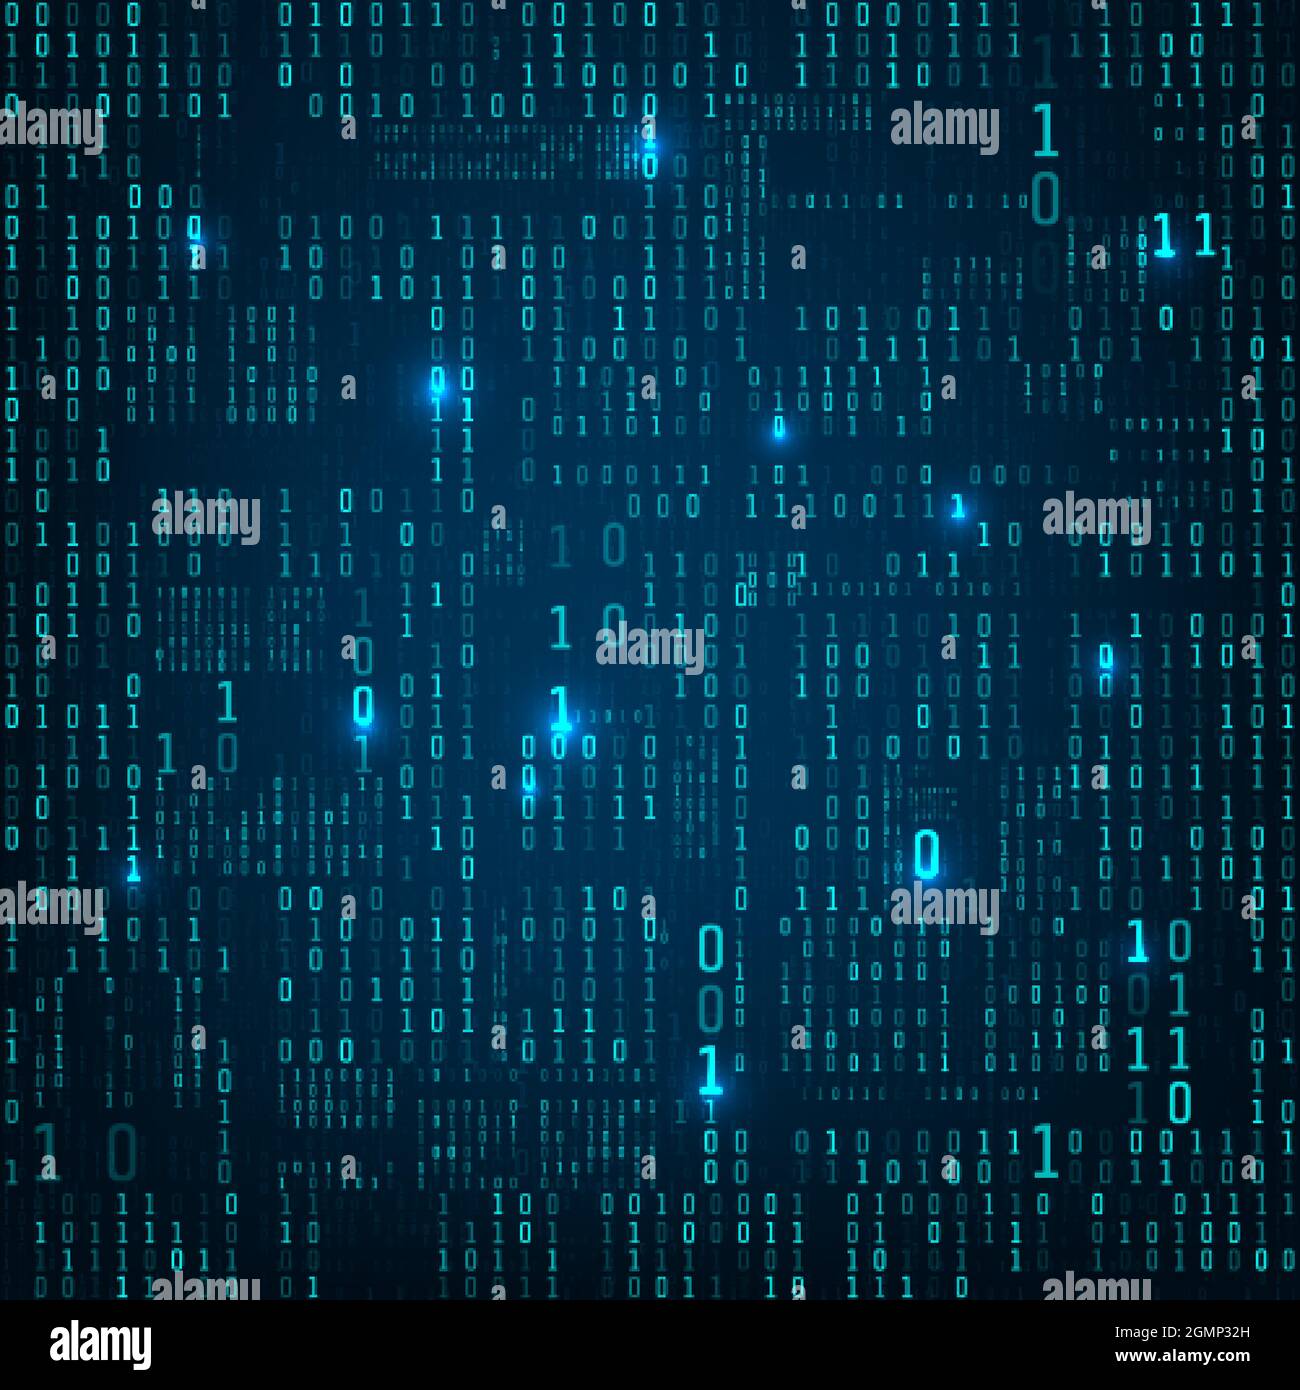 Matrix aus binären Zahlen. Binärer Computercode. Fluss von blauen zufällig digitalen Zahlen. Futuristische oder Science-Fiction-Kulisse. Zahlen fallen auf den dunklen Backgr Stock Vektor